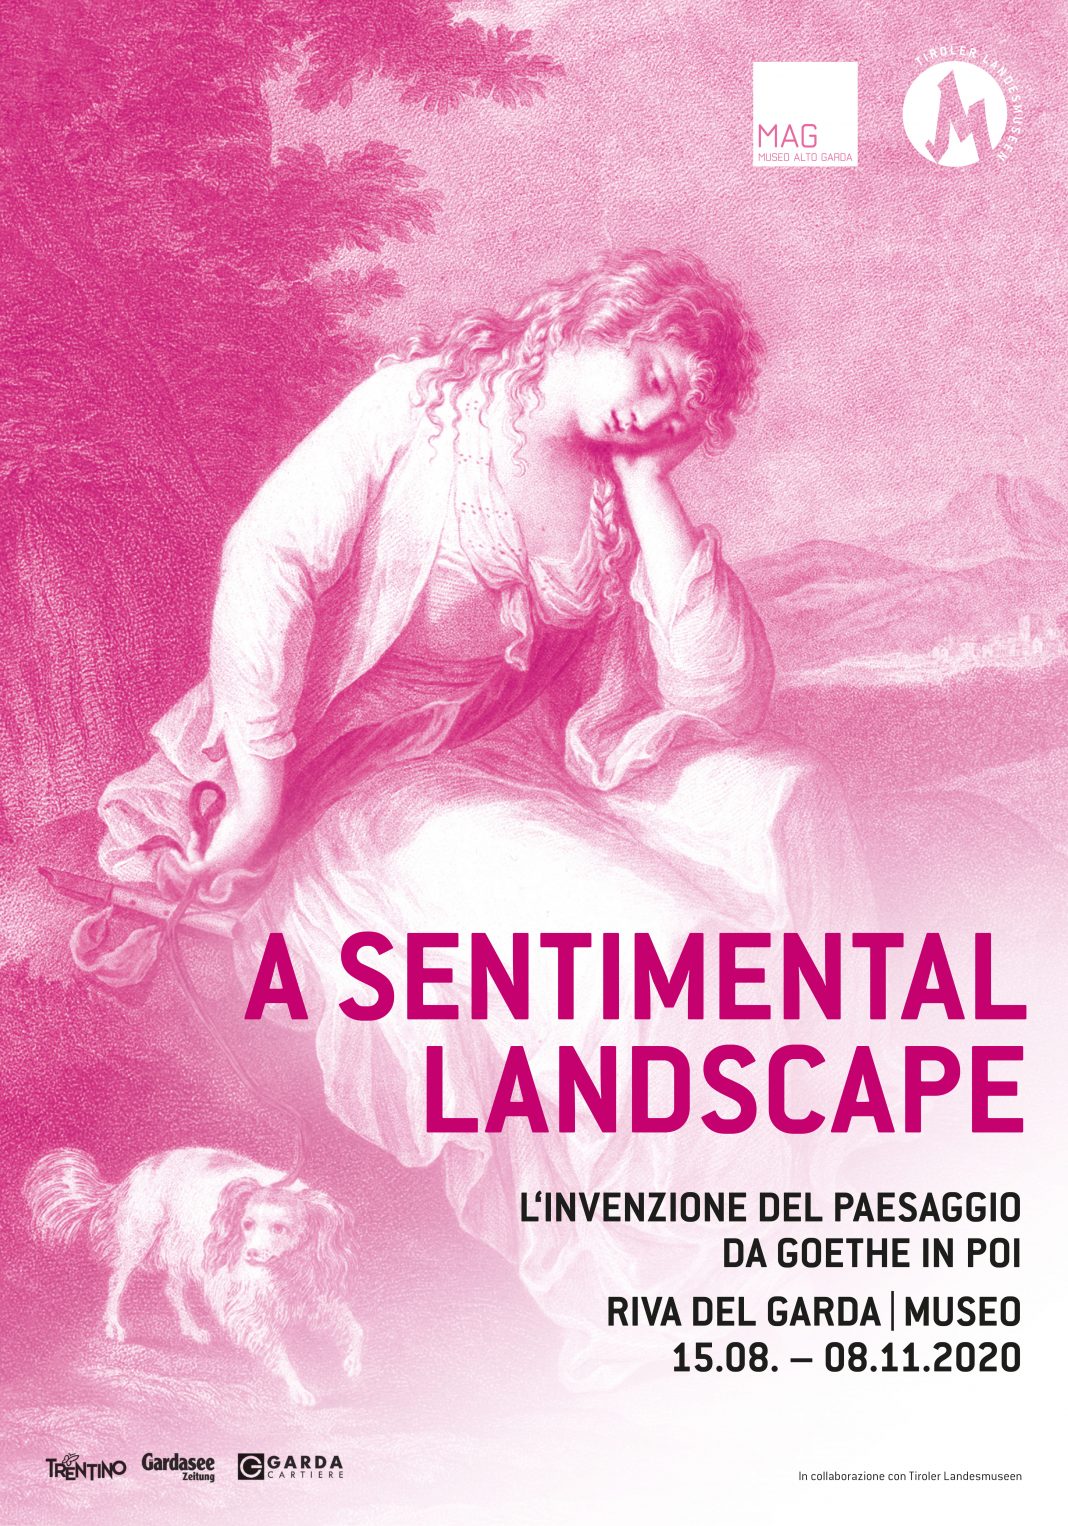 A Sentimental Landscape. L’invenzione del paesaggio da Goethe in poihttps://www.exibart.com/repository/media/2020/08/goethe-1068x1526.jpg